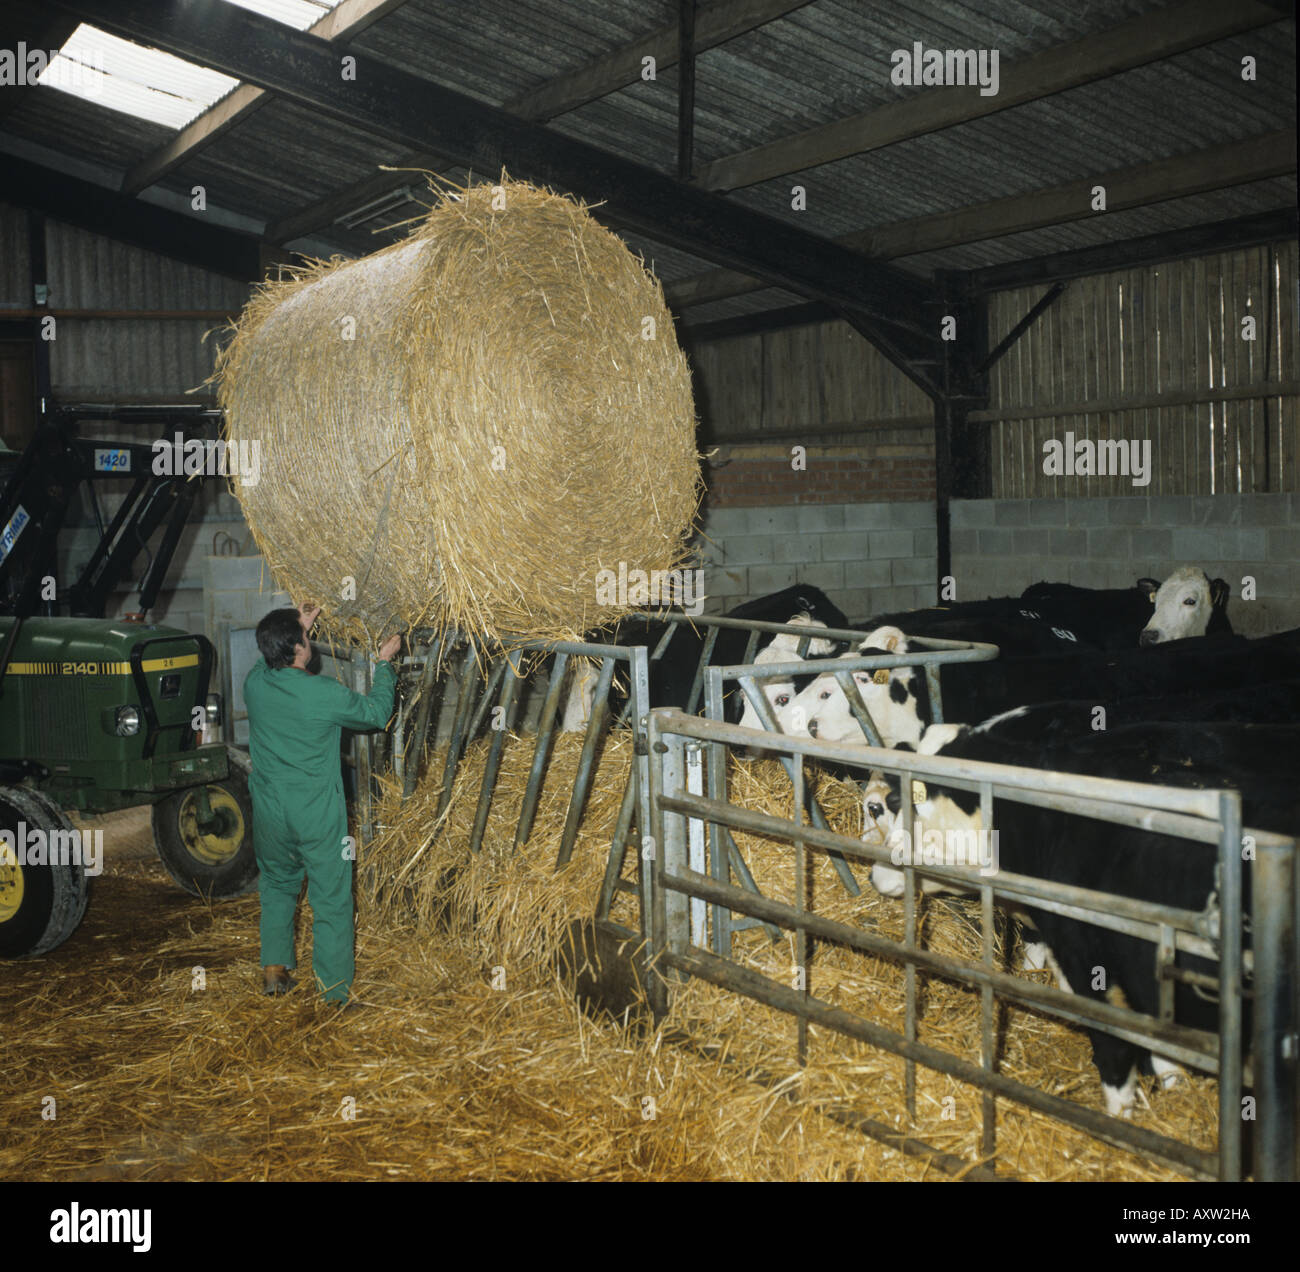 La manipulation de paille mise en ballots de paille rond dans l'alimentation animale bovins Hereford logés avec cross Banque D'Images